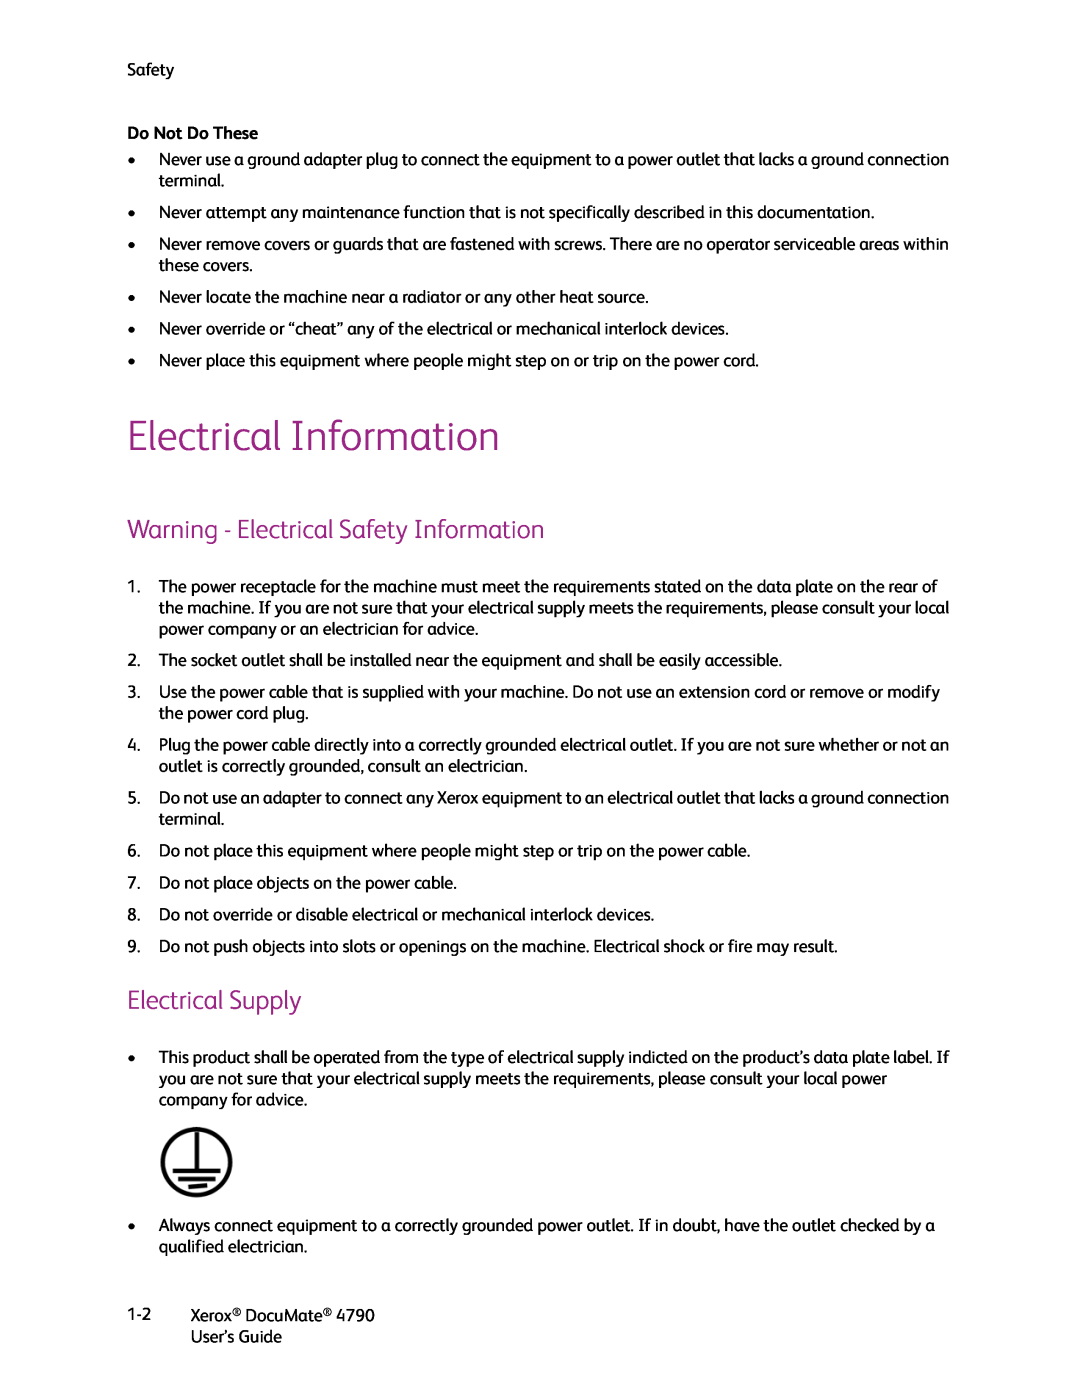 Xerox xerox documate Electrical Information, Warning - Electrical Safety Information, Electrical Supply, Do Not Do These 